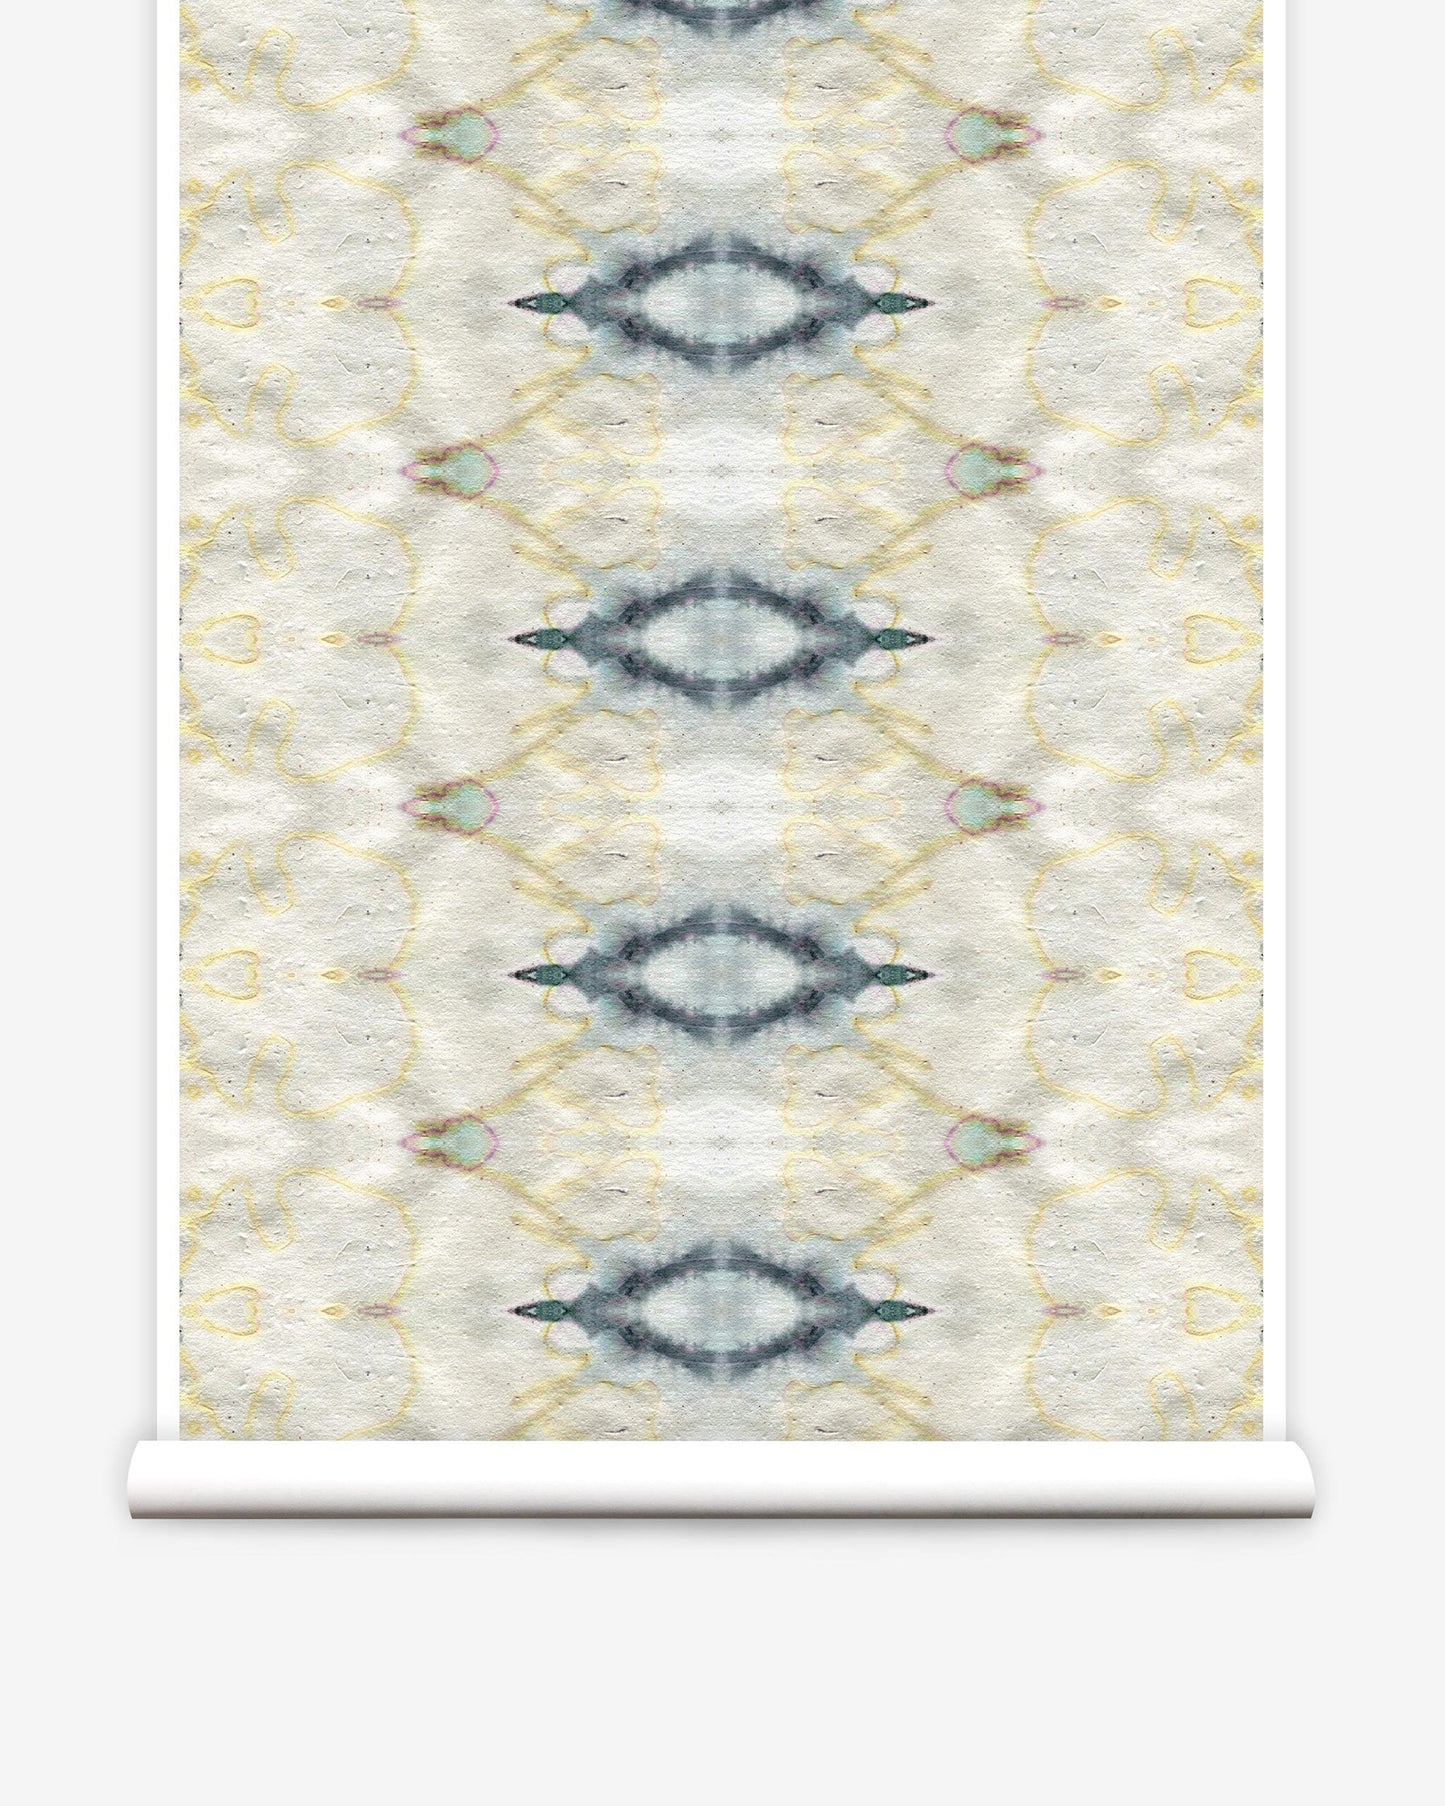 The Knitting Wallpaper||Sand